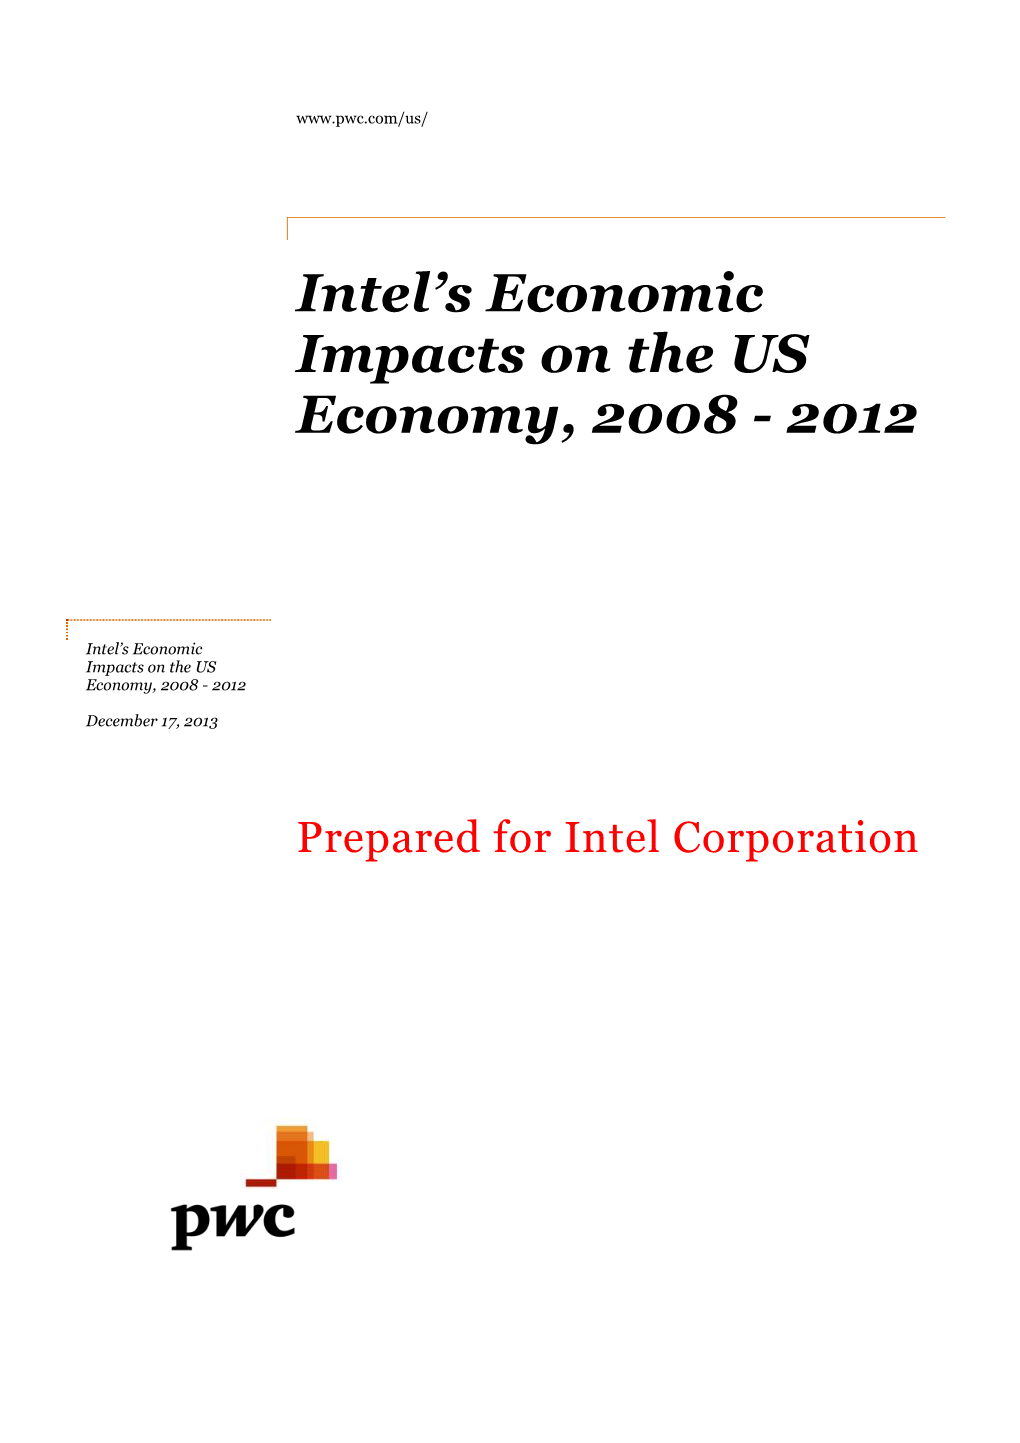 Intel's Economic Impacts on the US Economy, 2008-2012